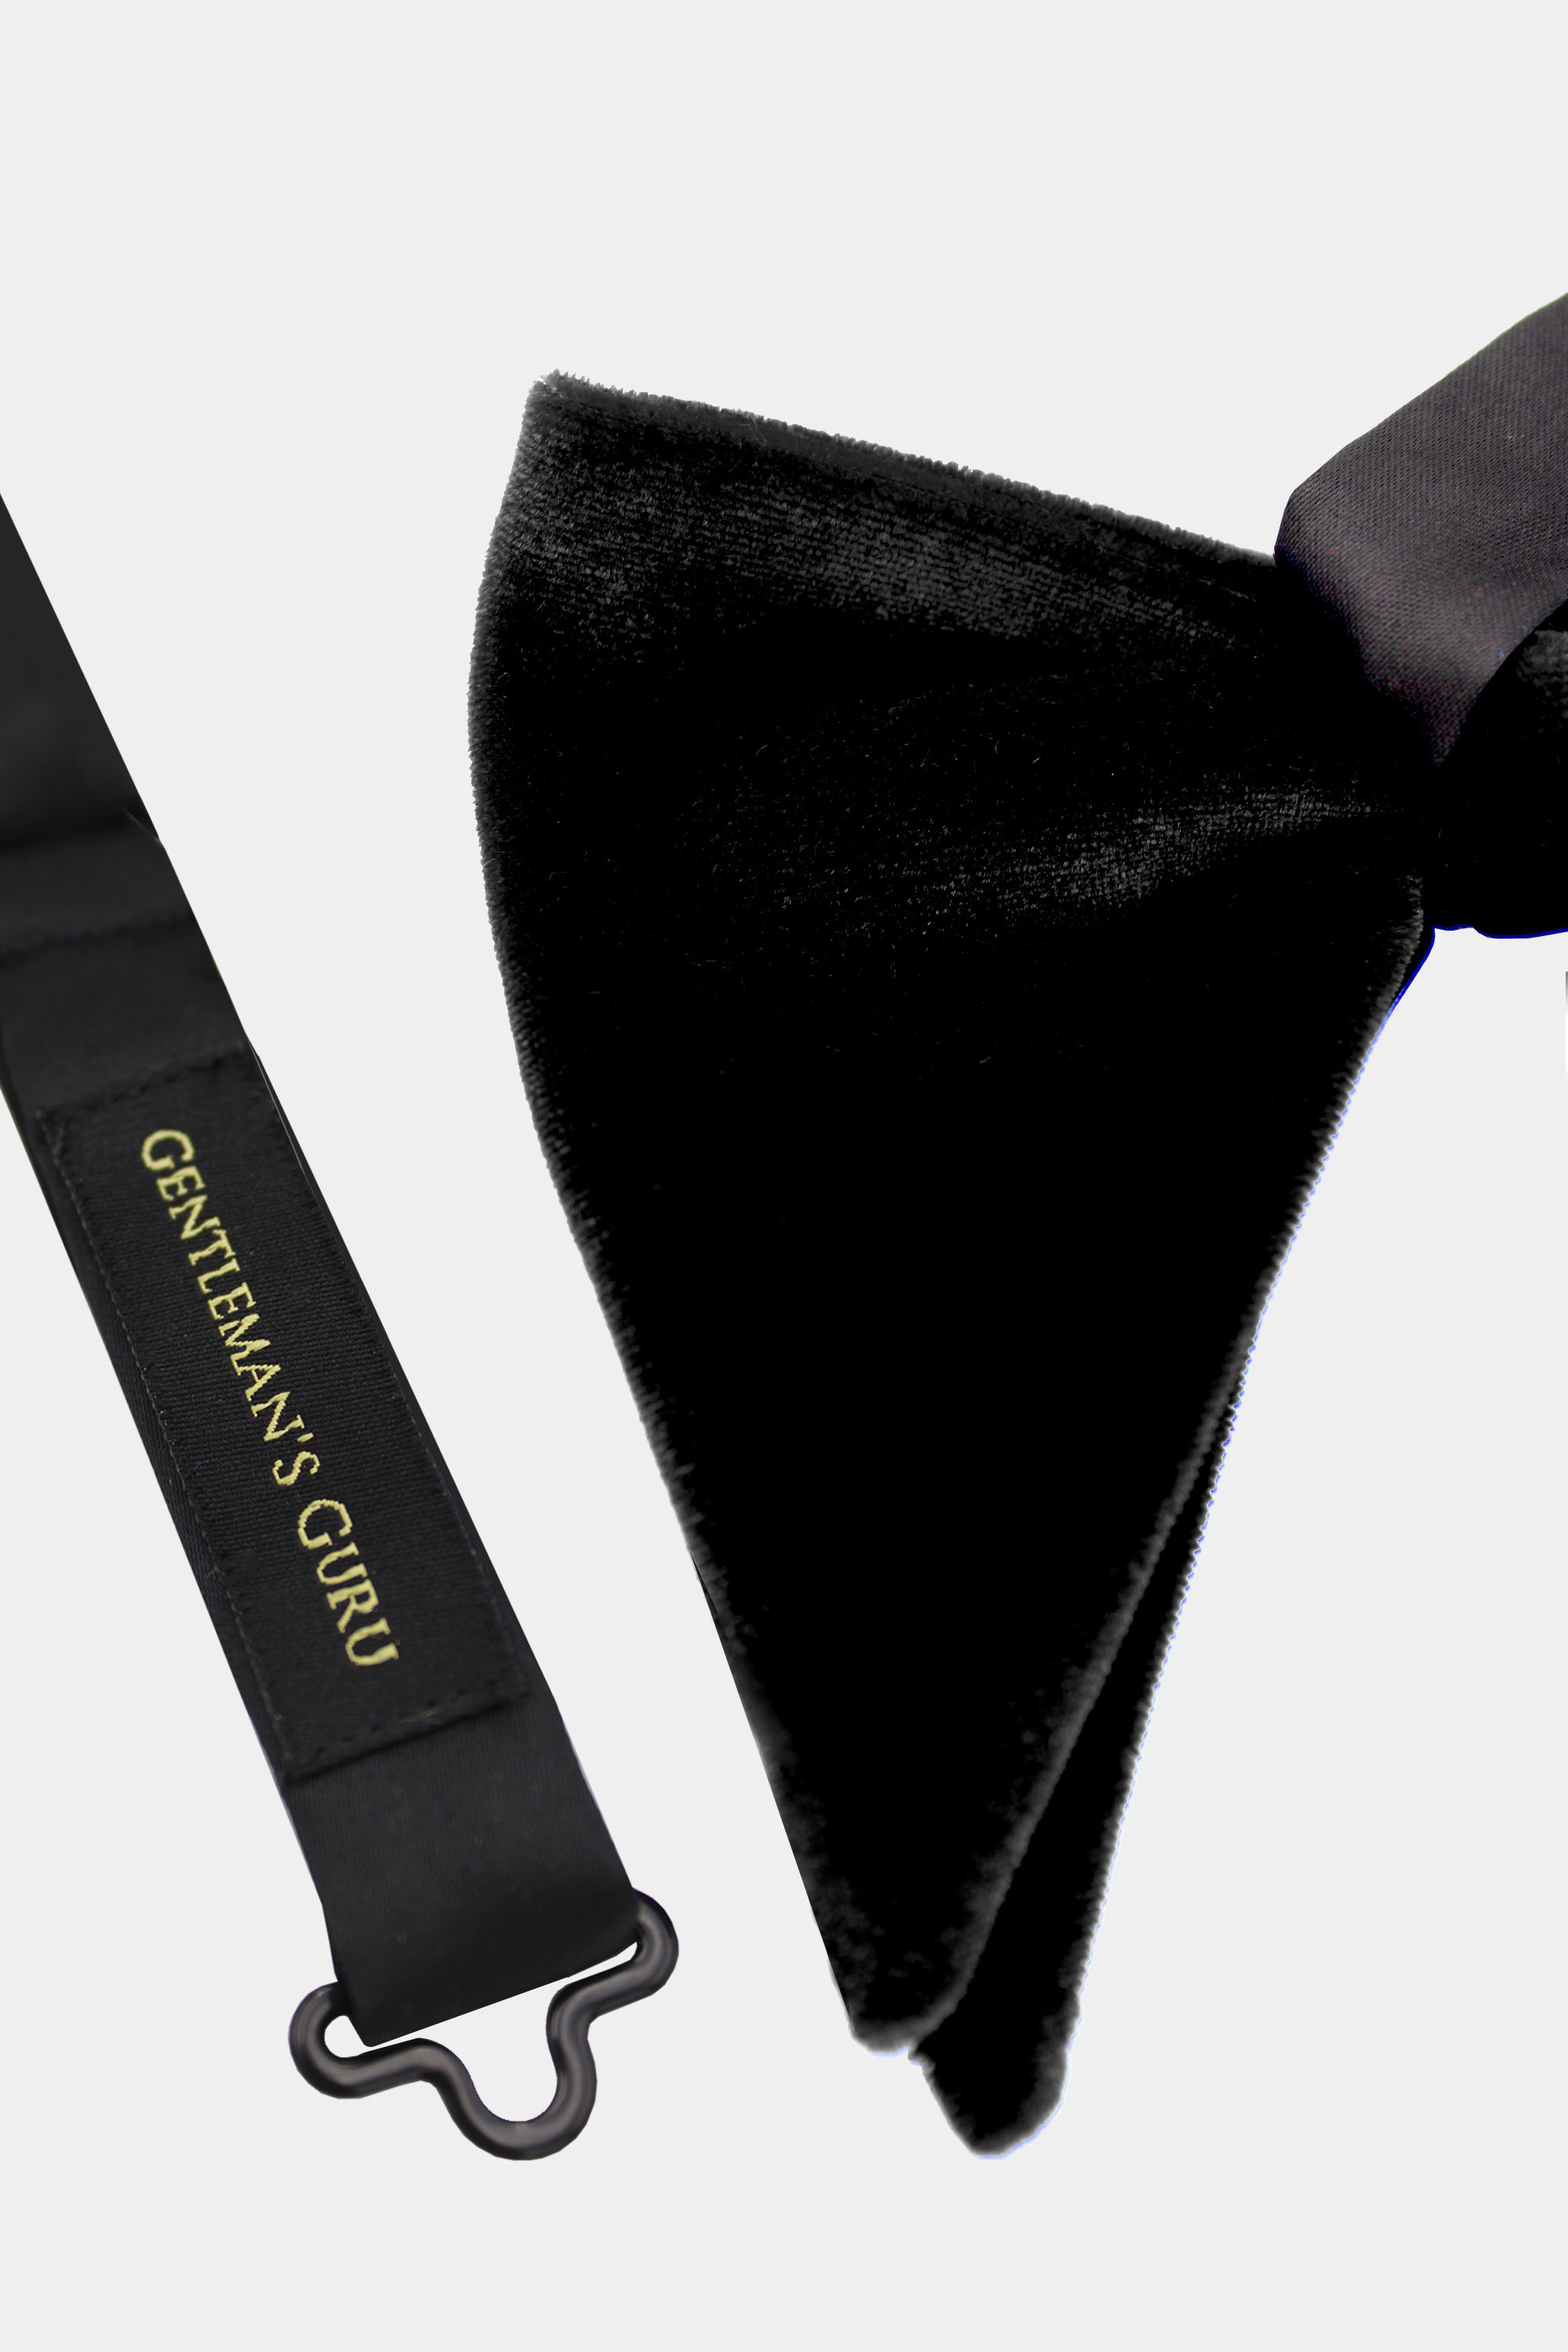 Velvet-Black-Bow-Tie-from-Gentlemansguru.com.